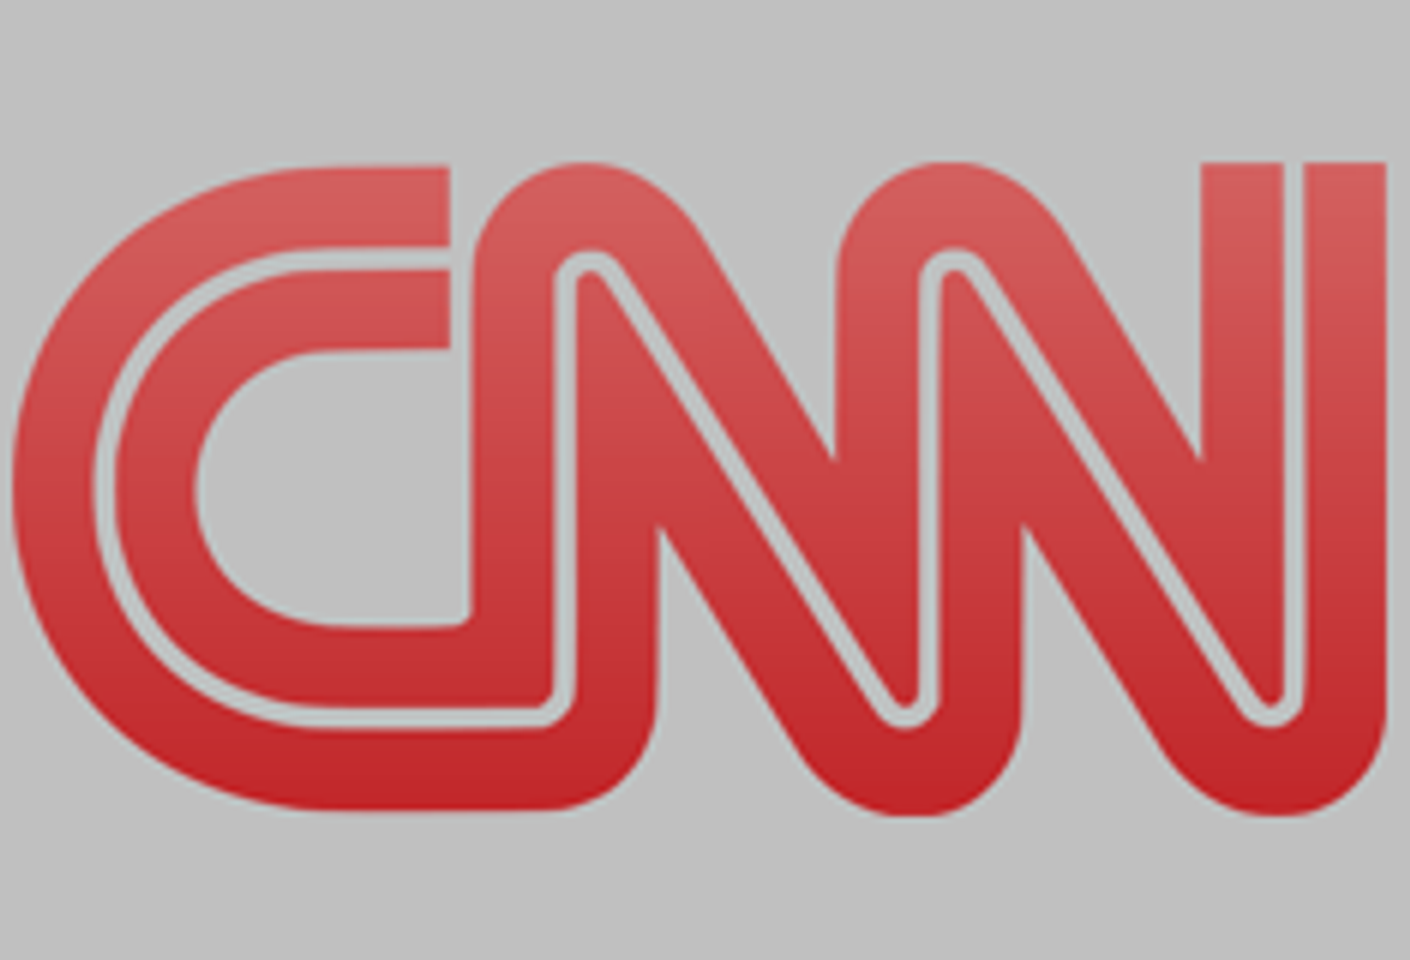 Paul Fishbein to Appear on CNN&#8217;s &#8216;Glenn Beck Show&#8217;